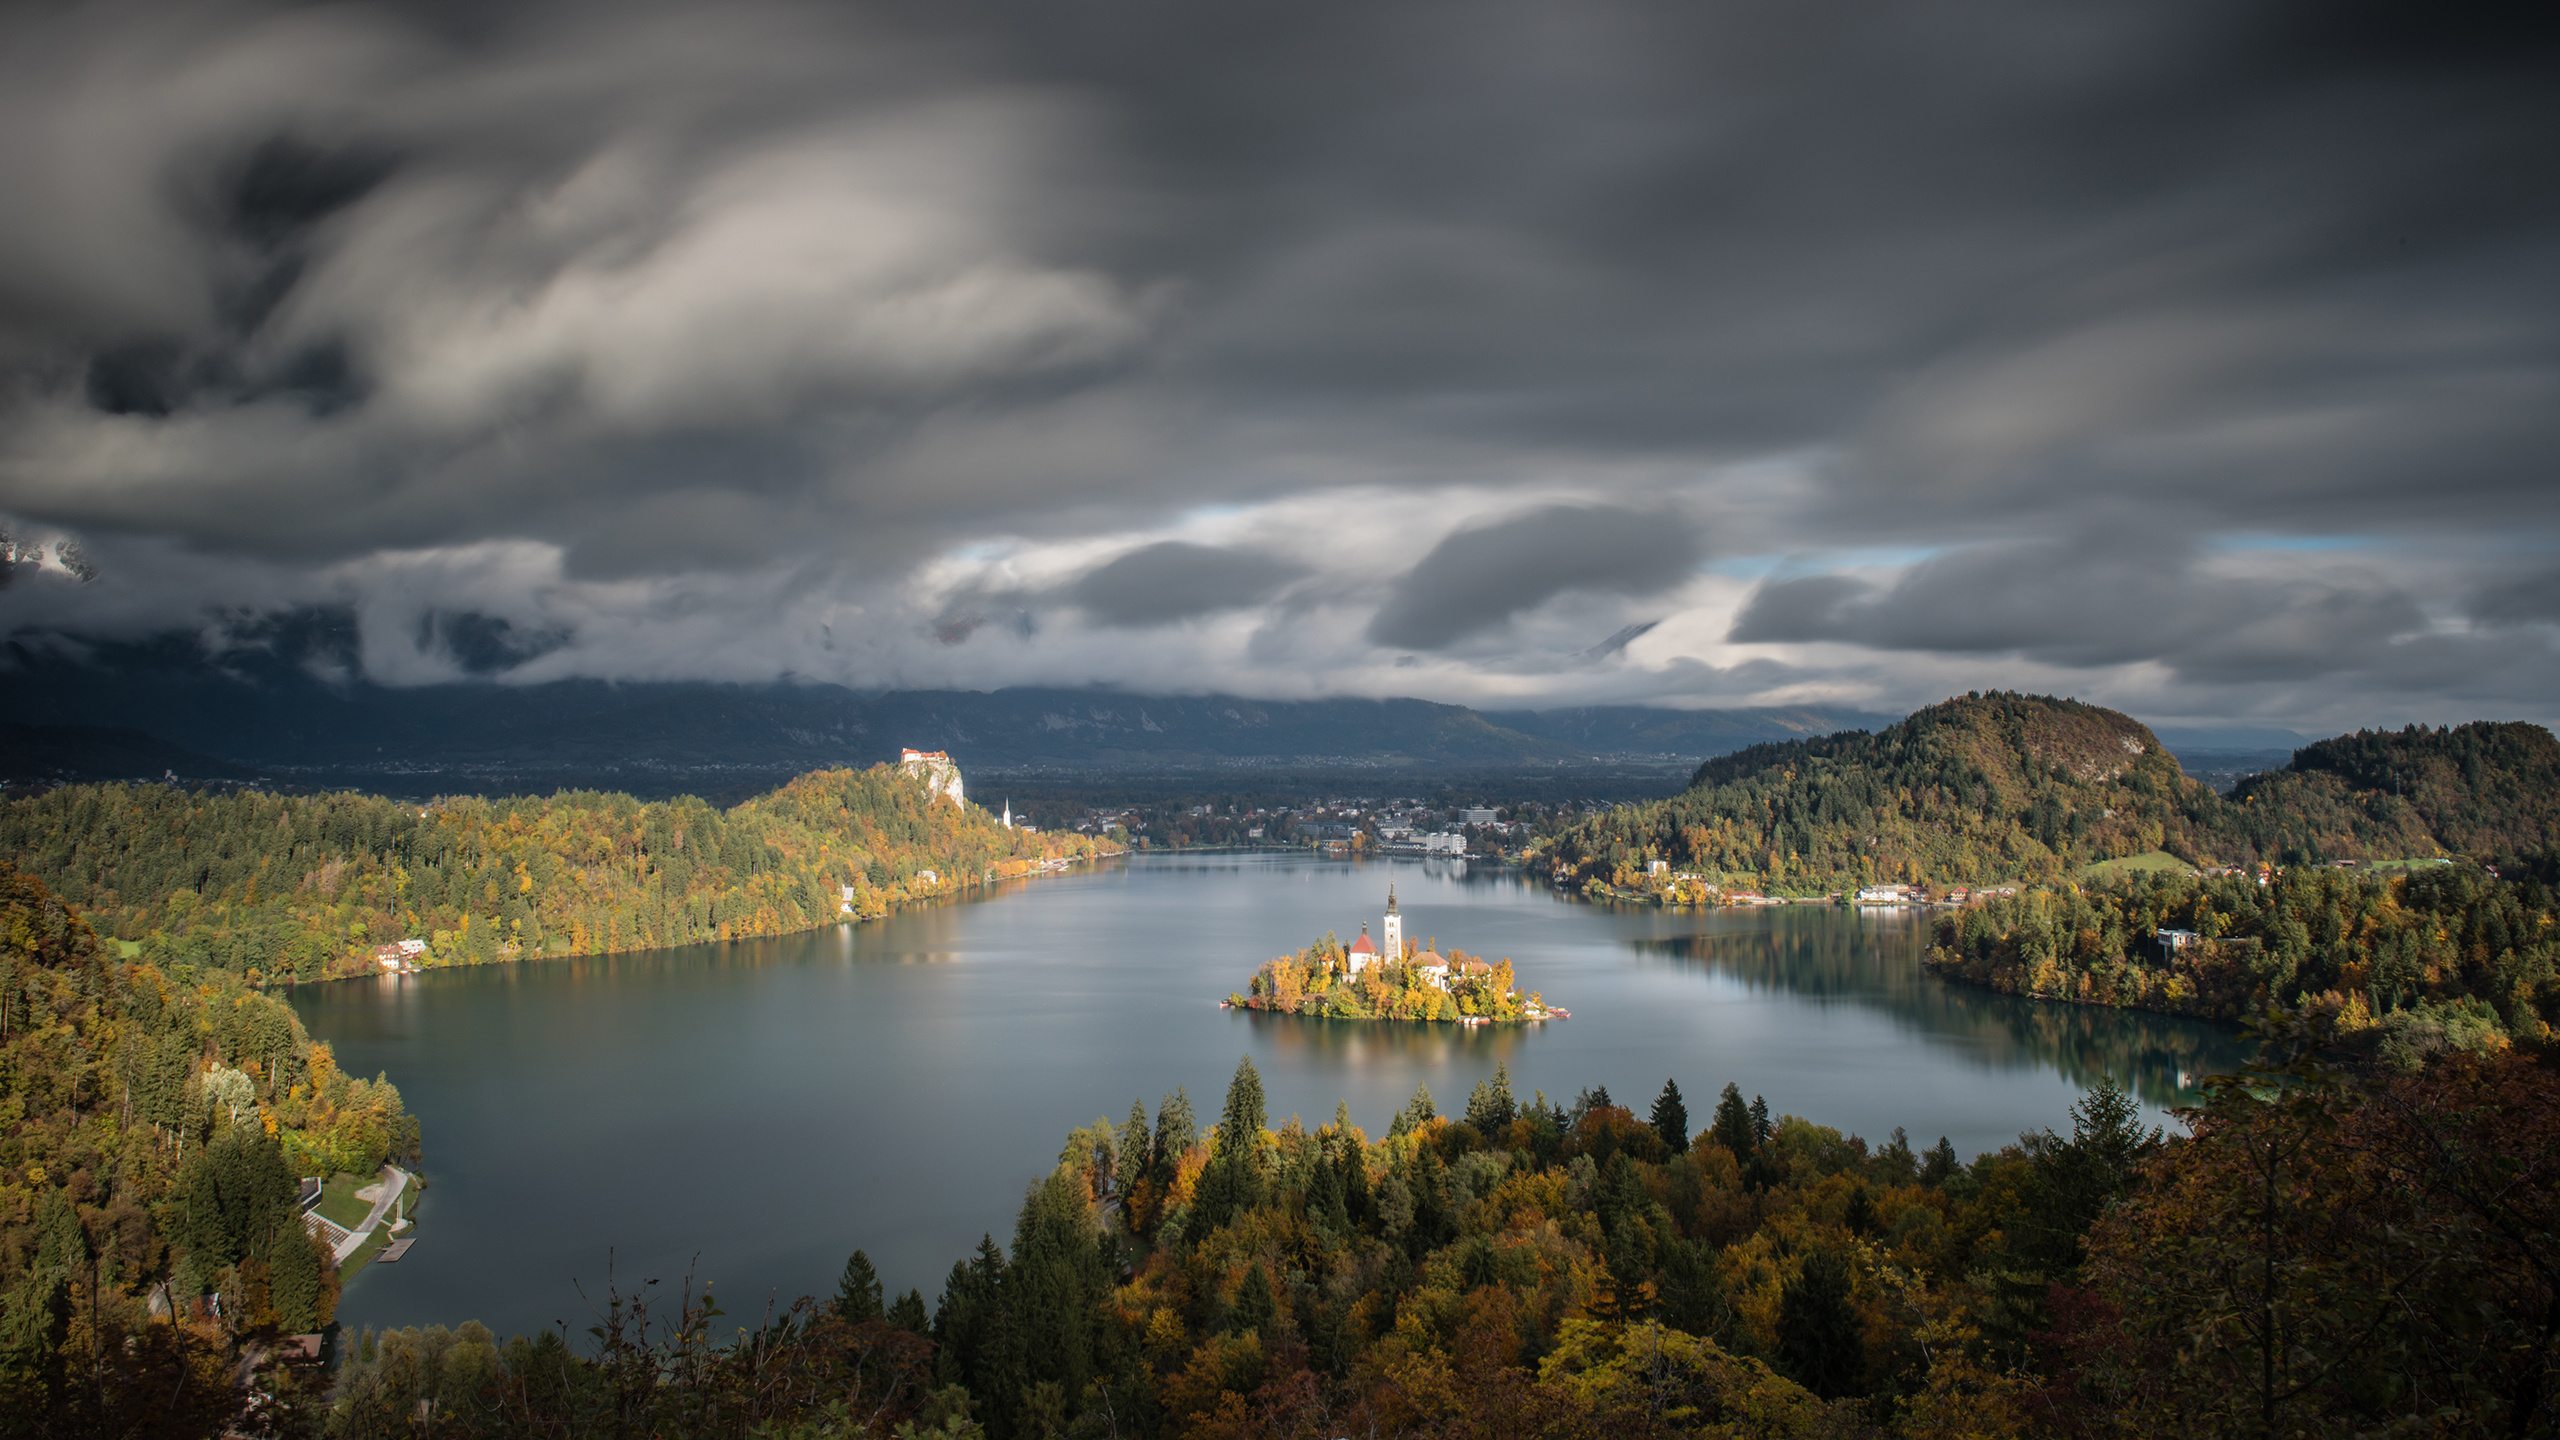 Lake Bled, Spectacular desktop wallpapers, Captivating landscapes, Jeff Bartlett's collection, 2560x1440 HD Desktop